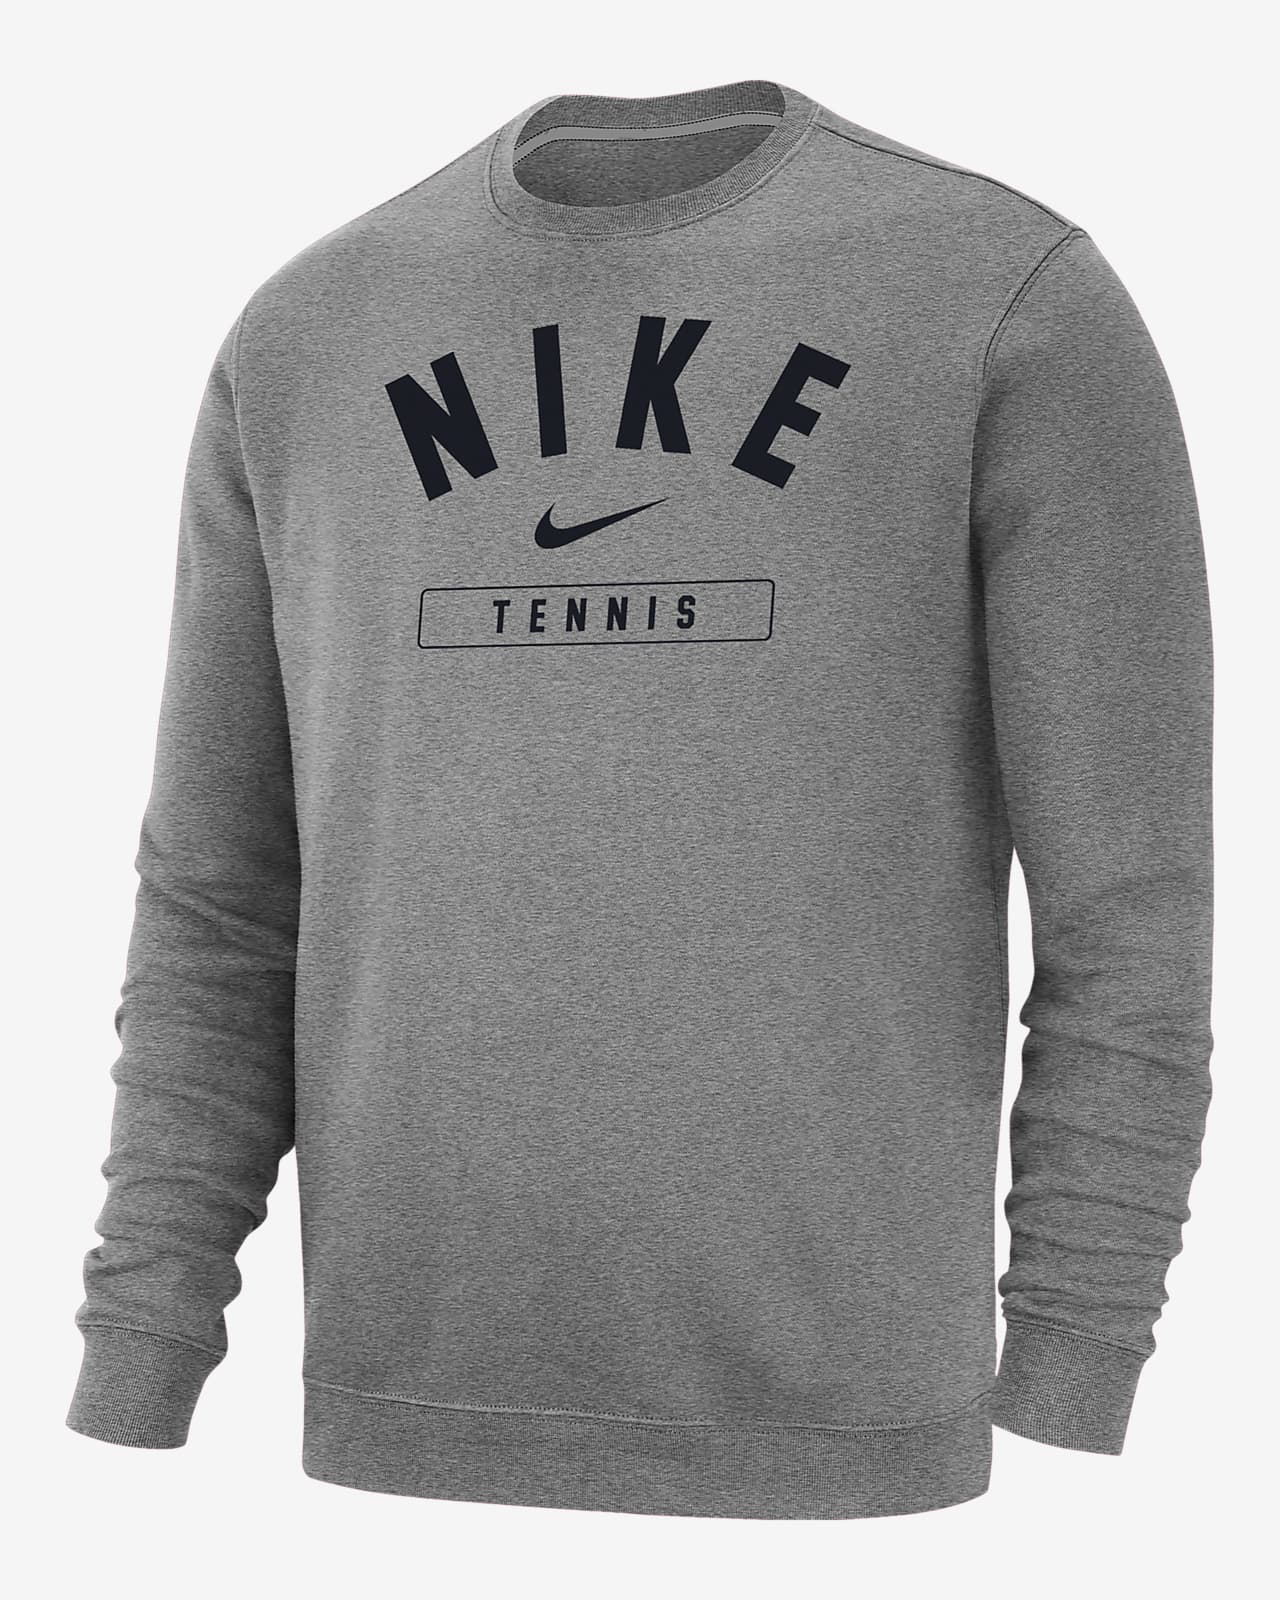 Nike Tennis Men's Crew-Neck Sweatshirt